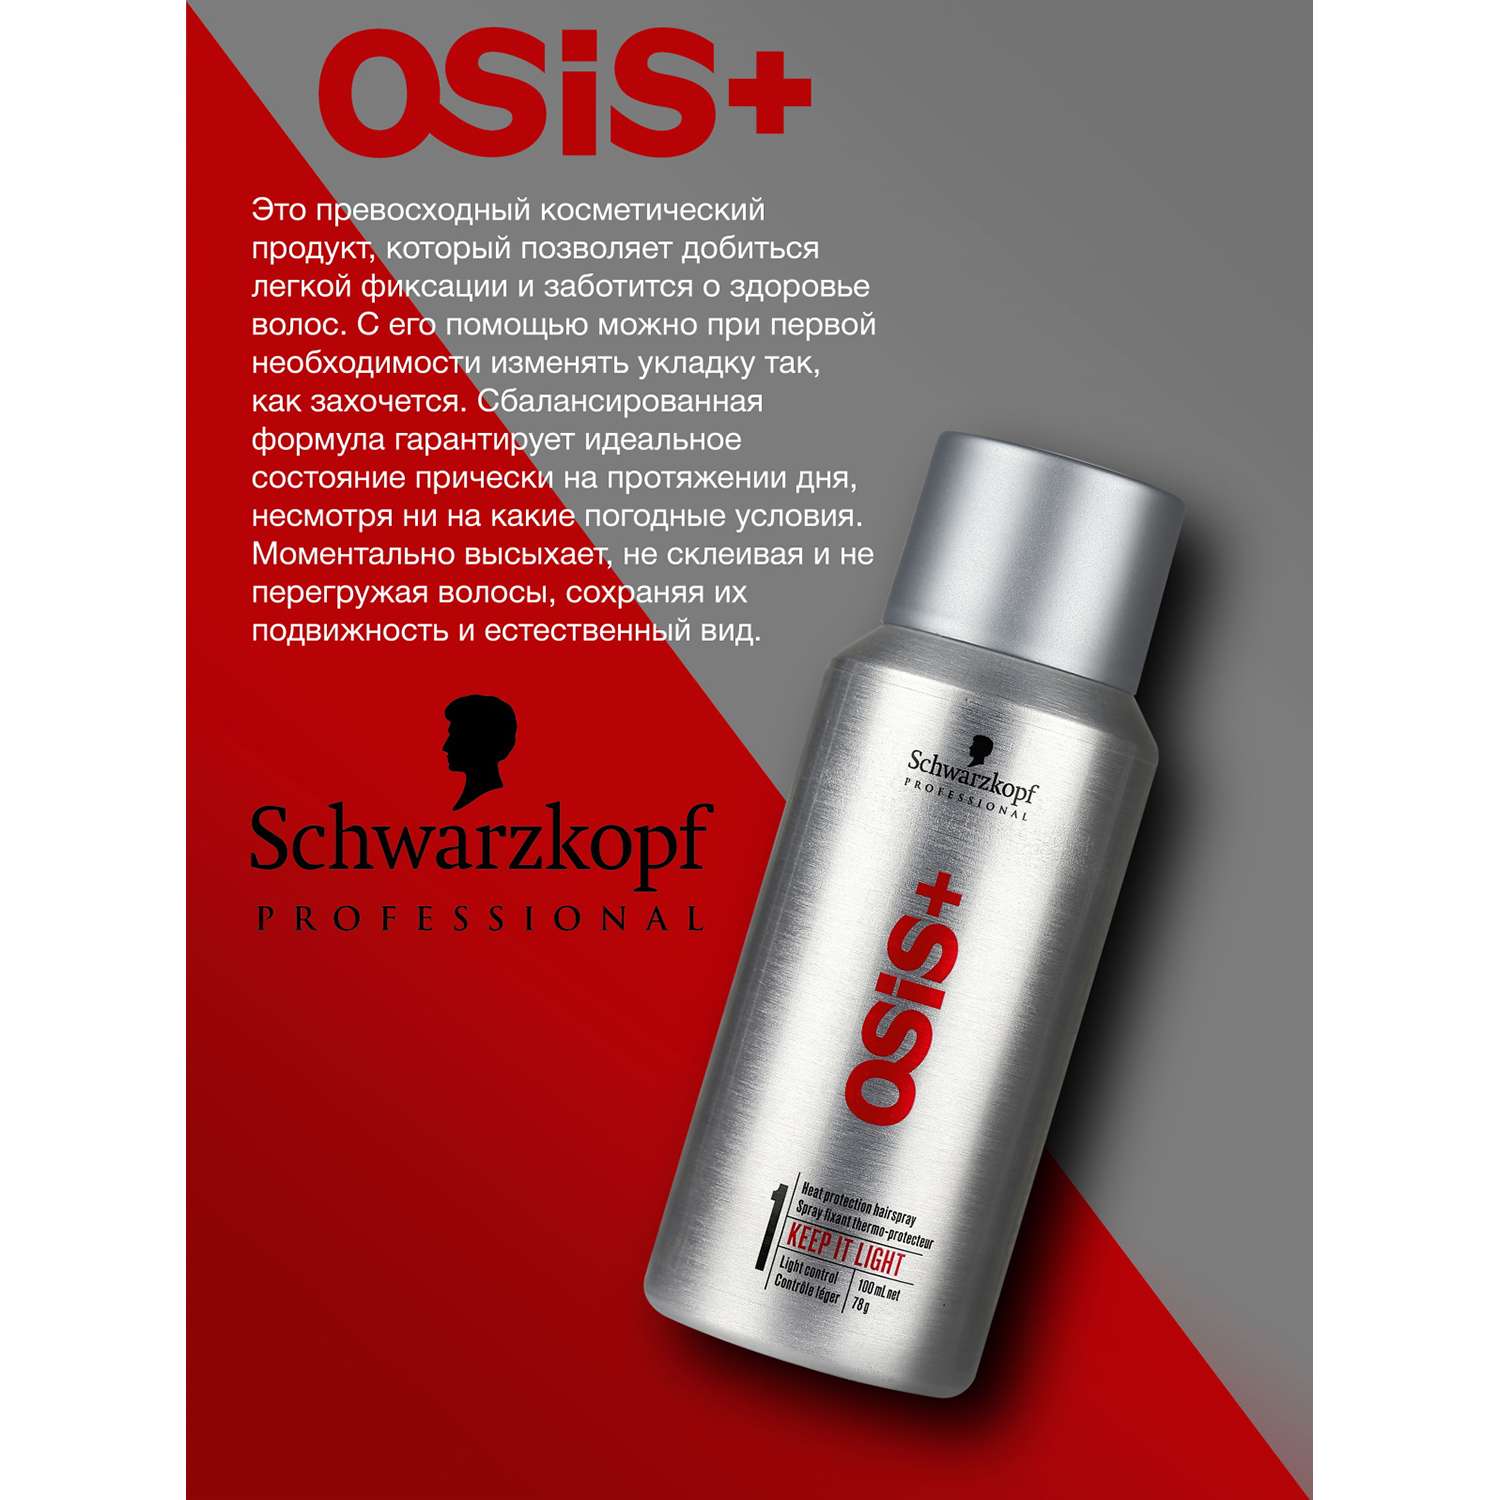 Лак Schwarzkopf Professional OSIS+ легкой фиксации термозащитный keep it light 100 мл - фото 3